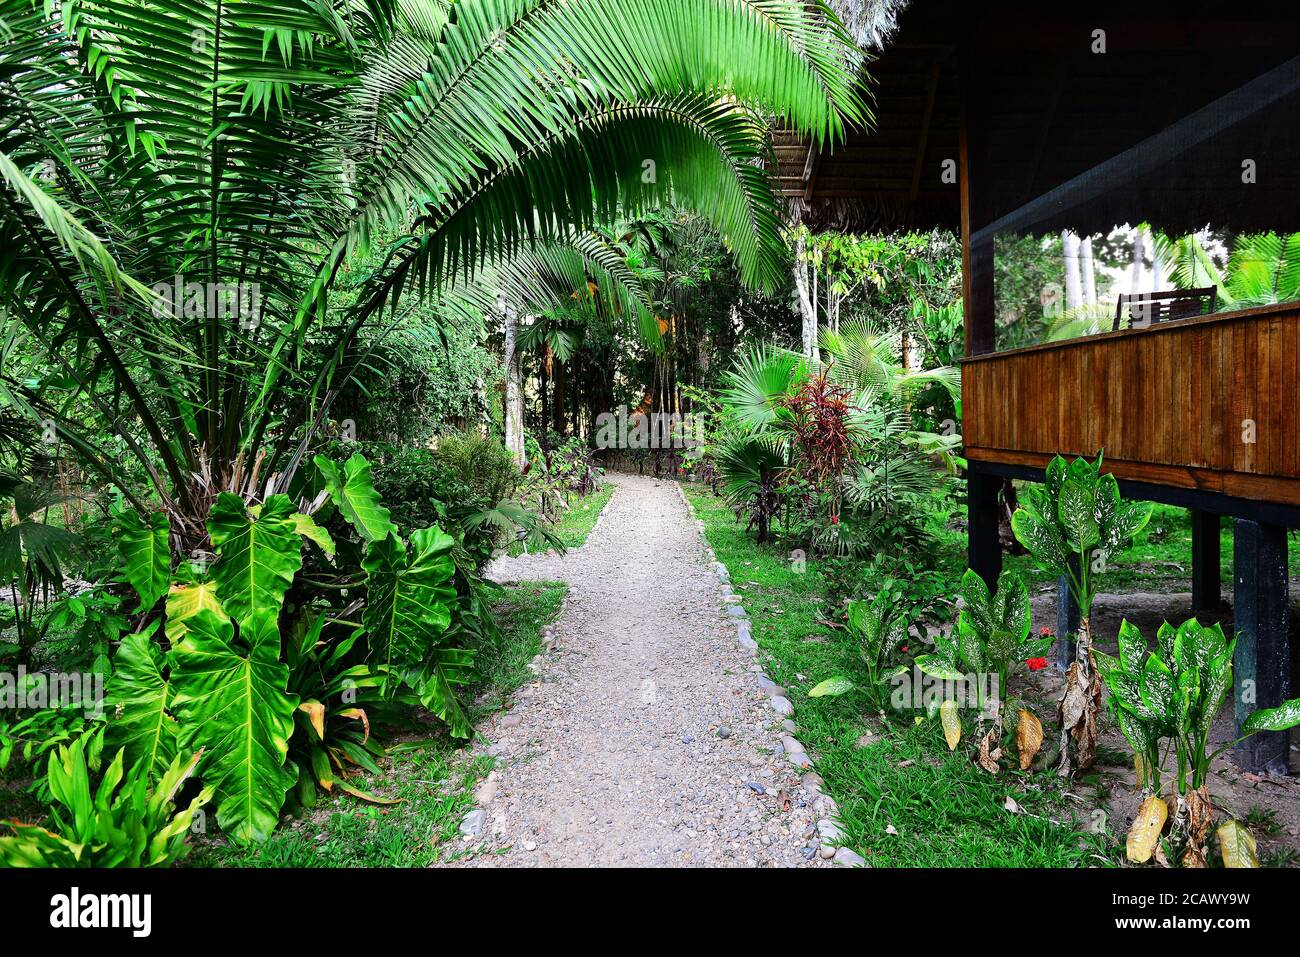 Tropical garden in the jungle of Peru. National Park Manu in Peru. Footpath in jungles of Amazon. Stock Photo